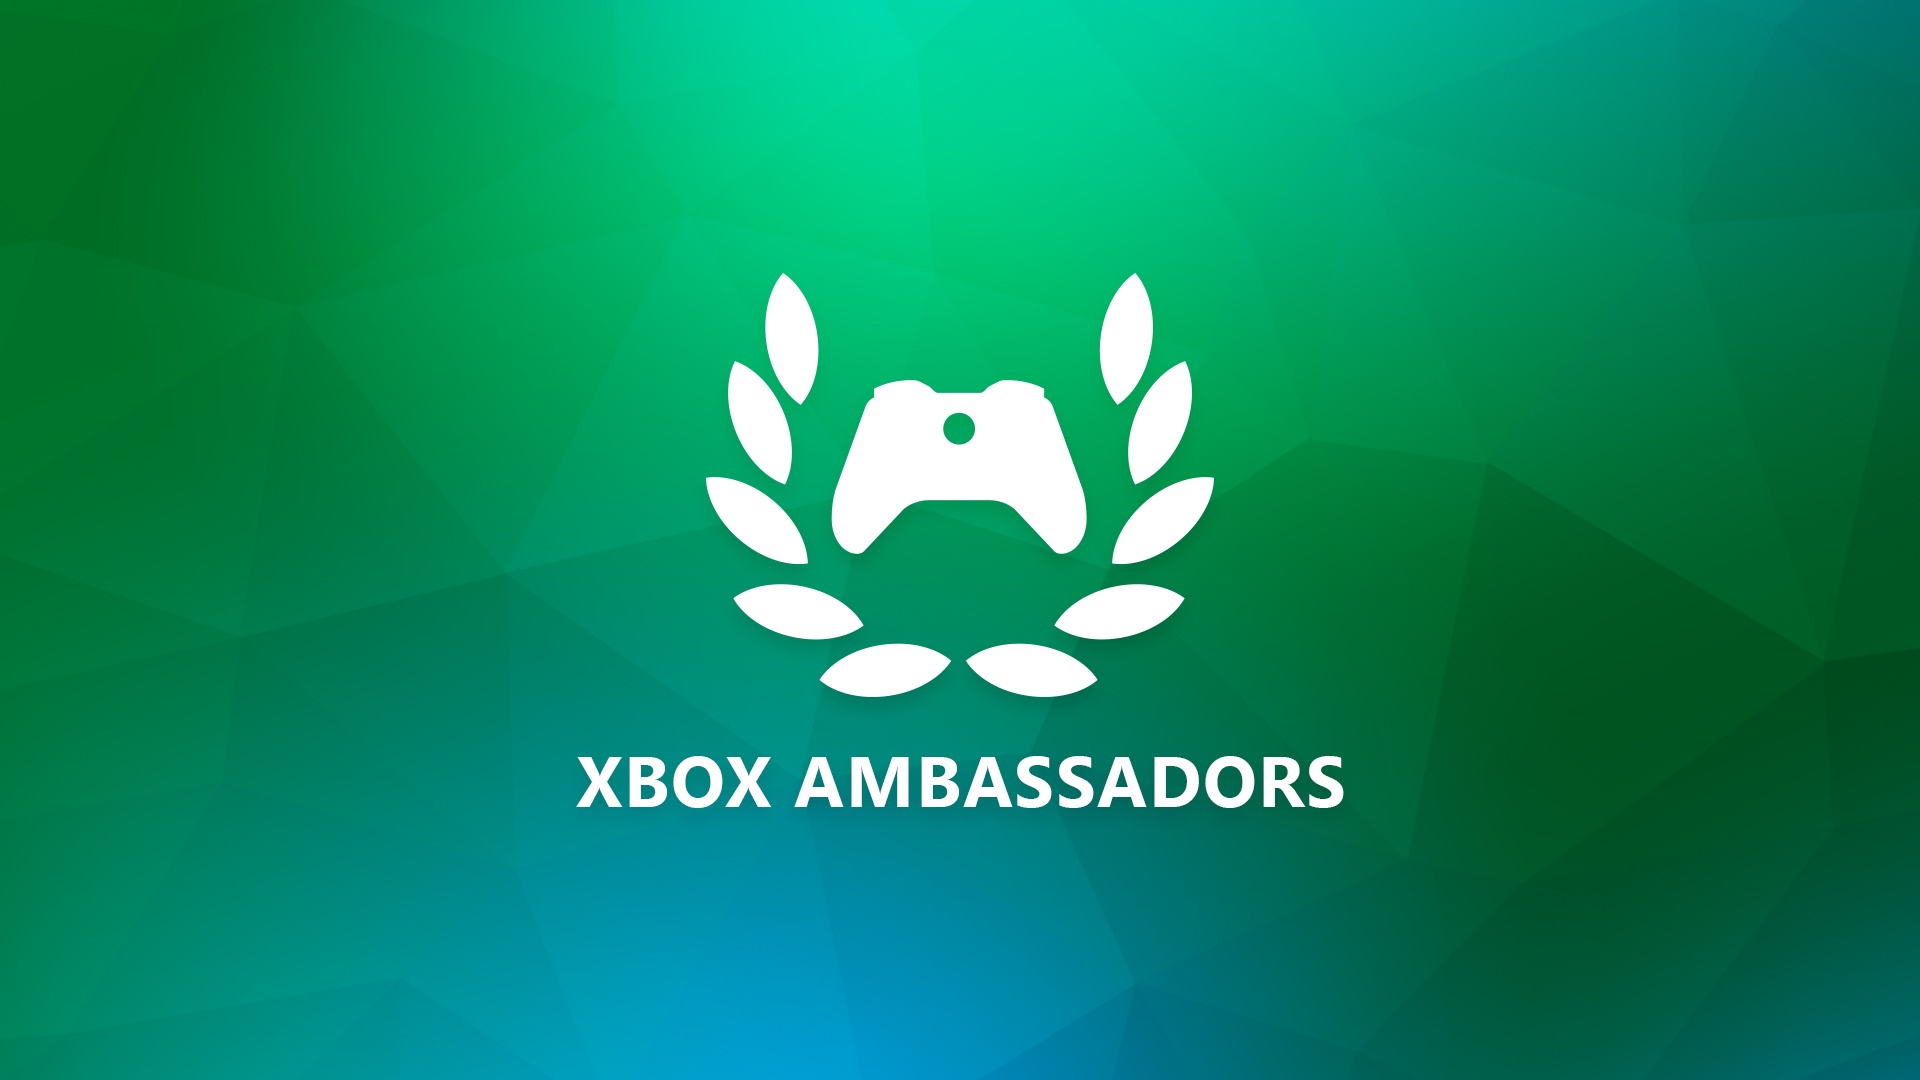 Ein weißes Xbox Ambassadors-Logo ist vor einem grünen Hintergrund mit blauen Schattierungen zu sehen. Der Schriftzug "Xbox Ambassadors" ist direkt unter dem Logo zu sehen.